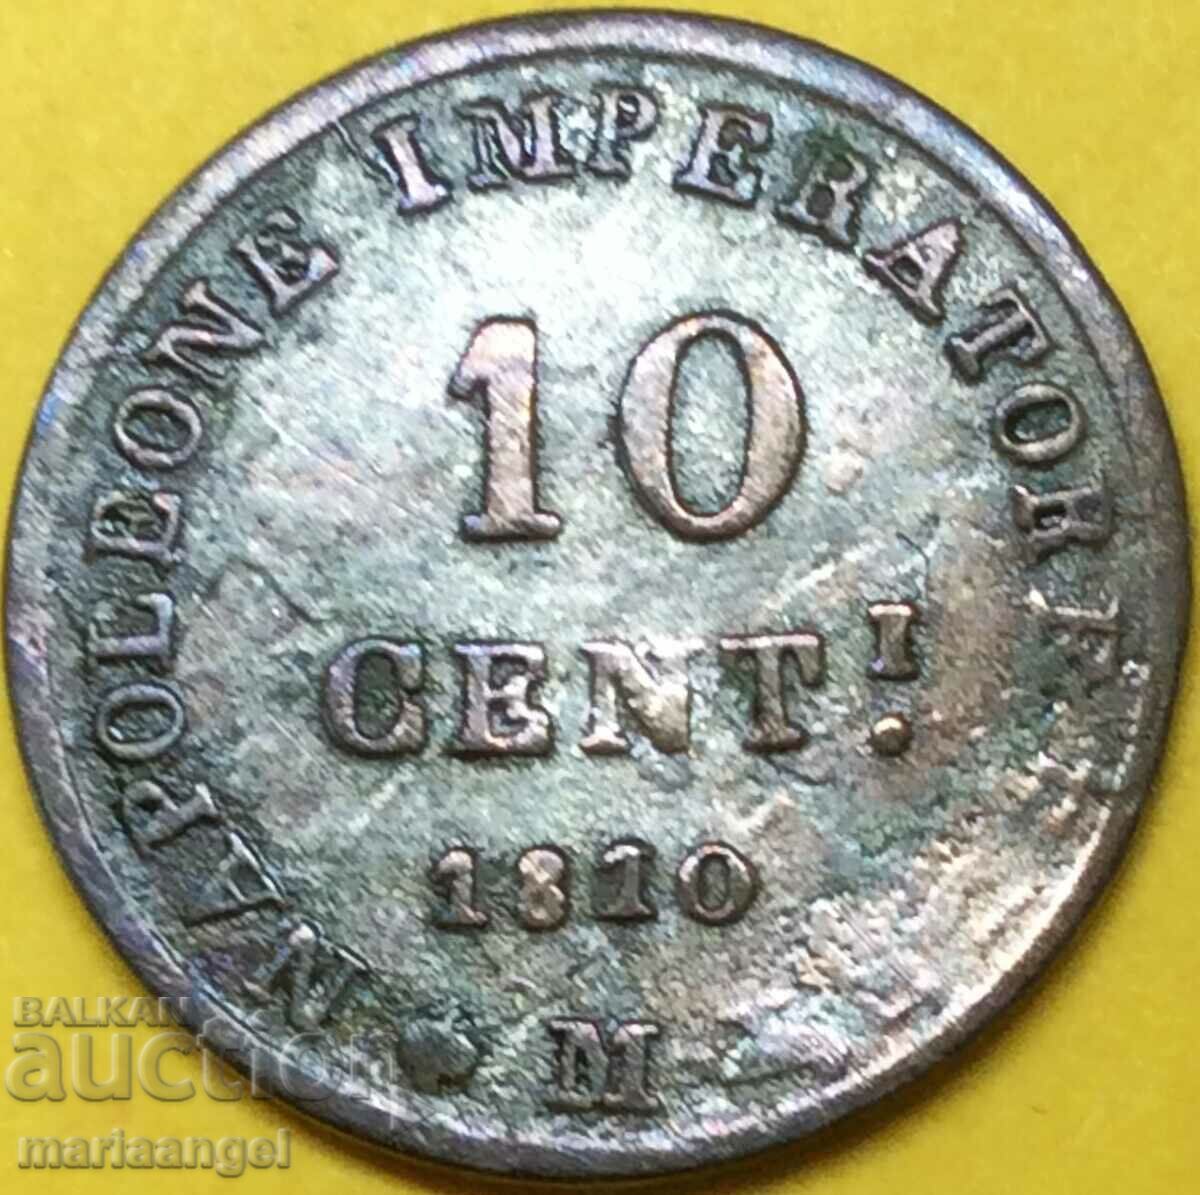 Napoleon 10 cents 1810 Italy coronation Milan - rare